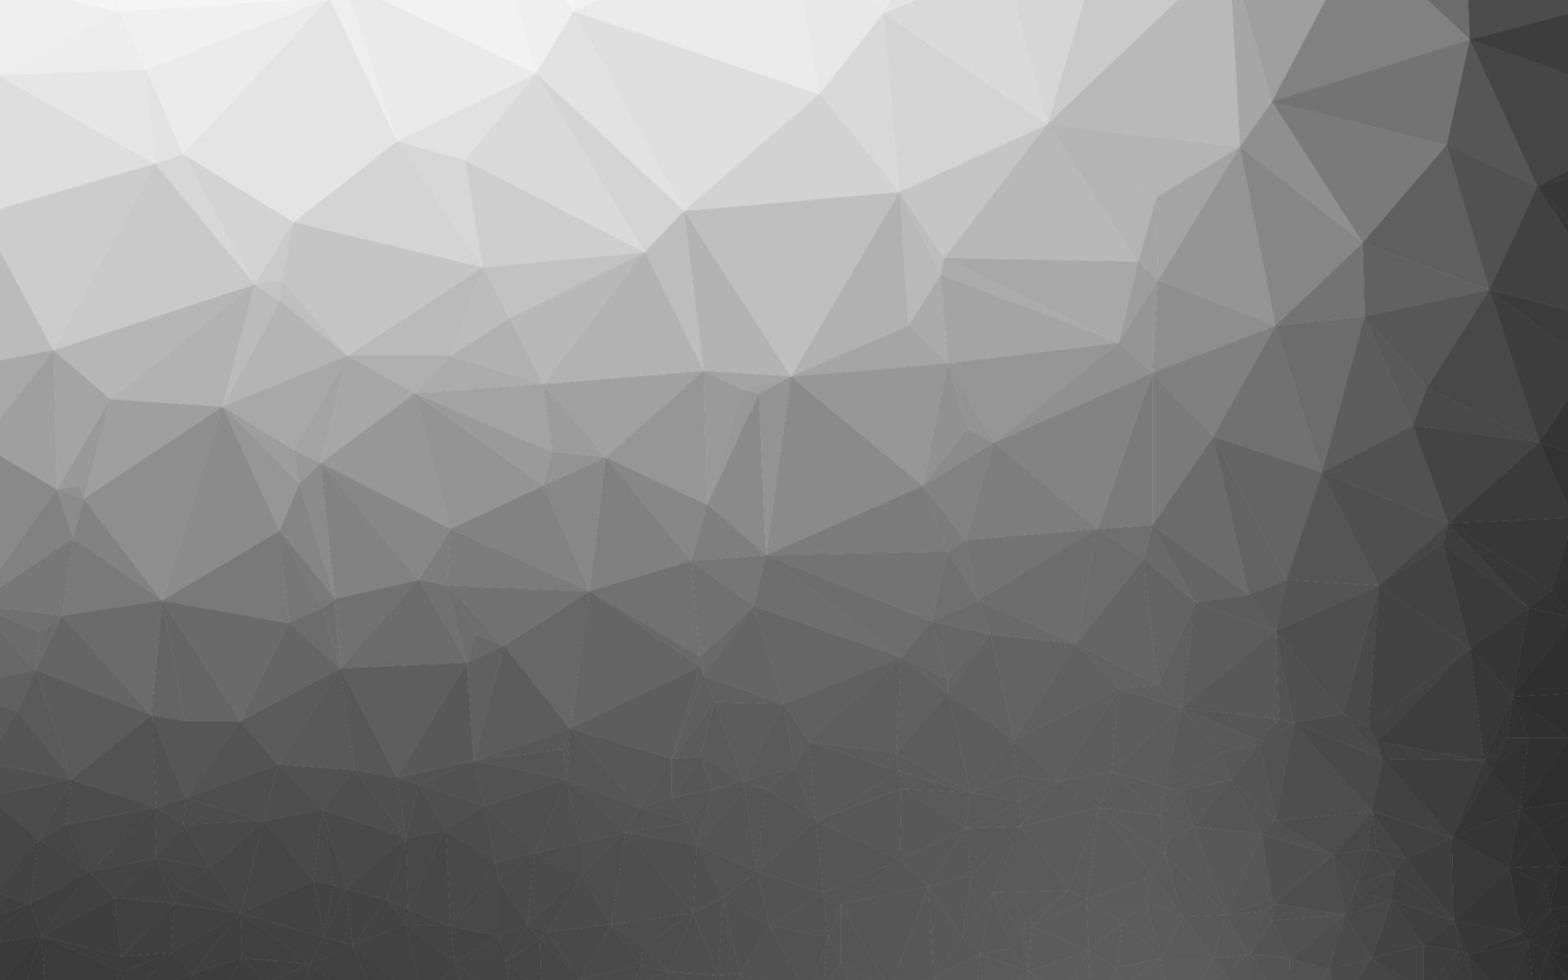 copertina poligonale astratta vettoriale argento chiaro, grigio.